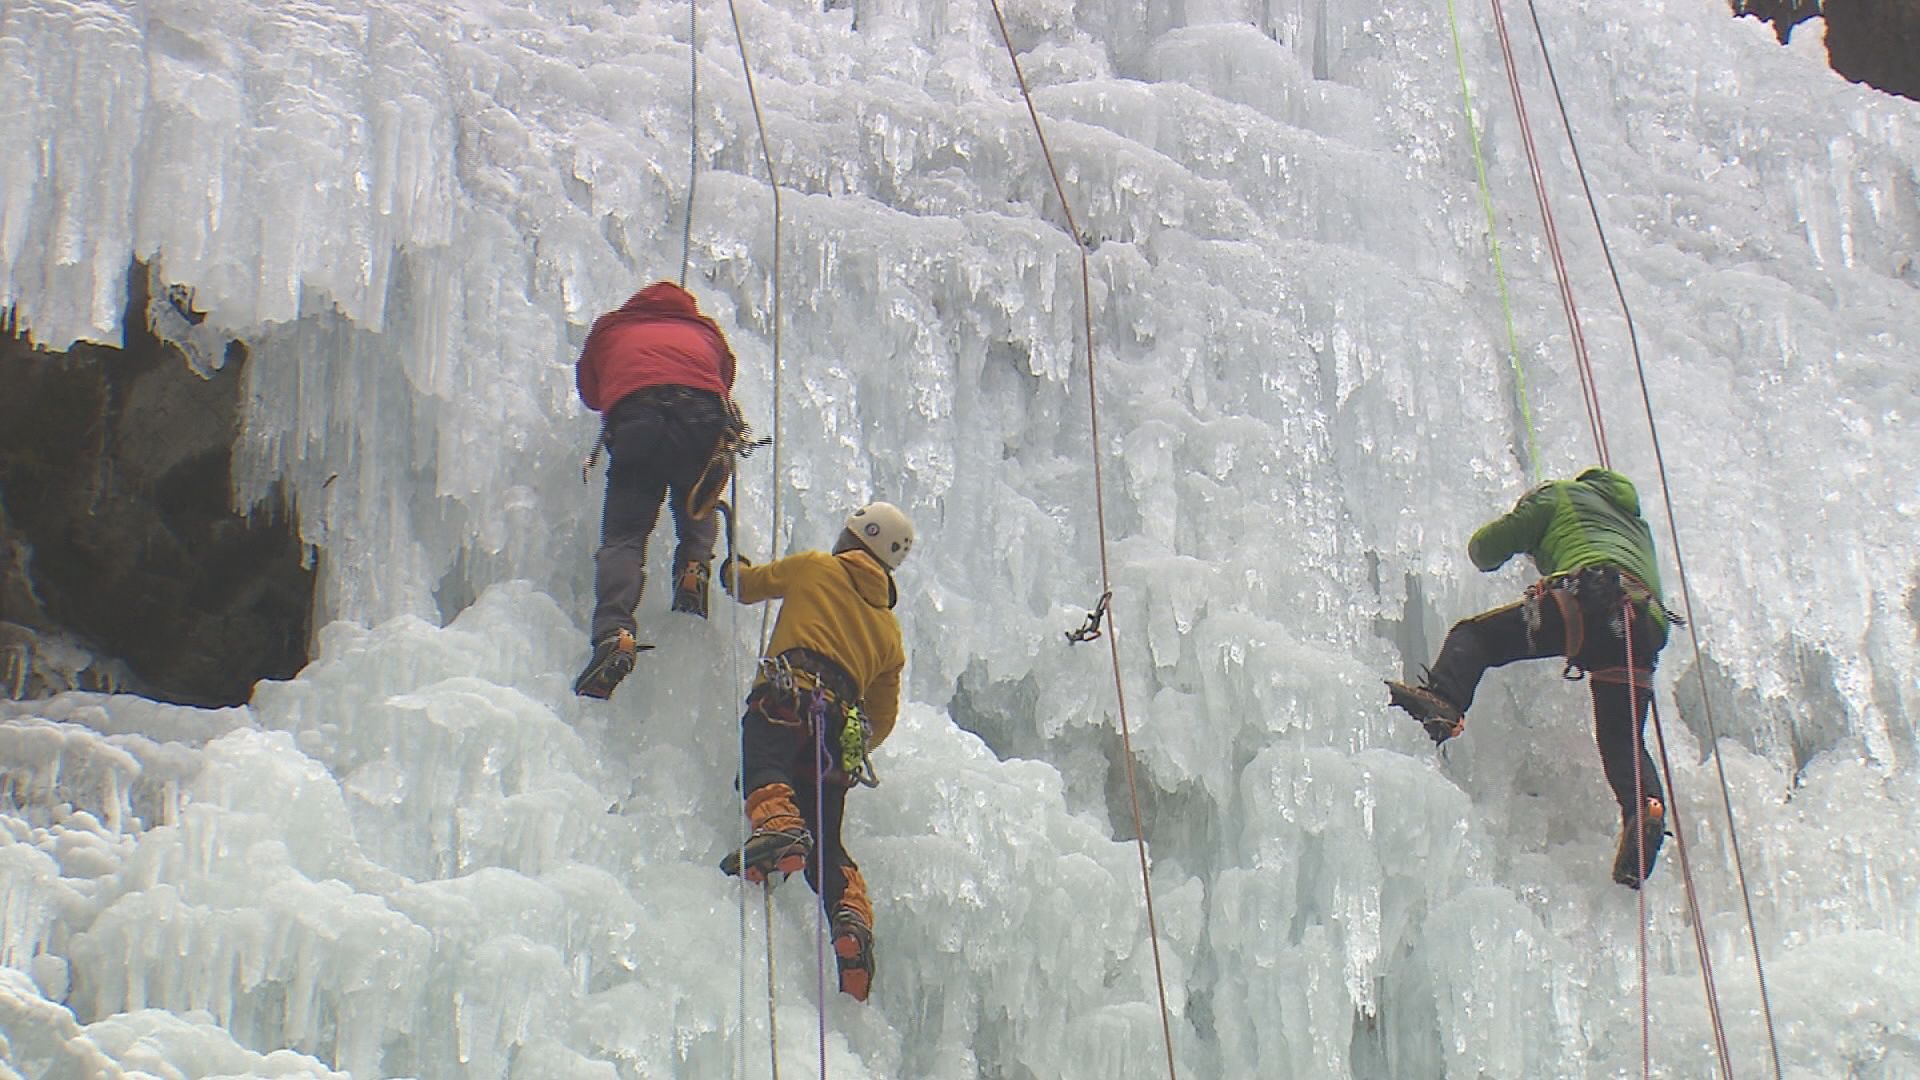 빙벽을 등반하고 있는 등반객들. 한 번 사고가 나면 큰 인명피해로 이어질 수 있어 주의해야 한다.